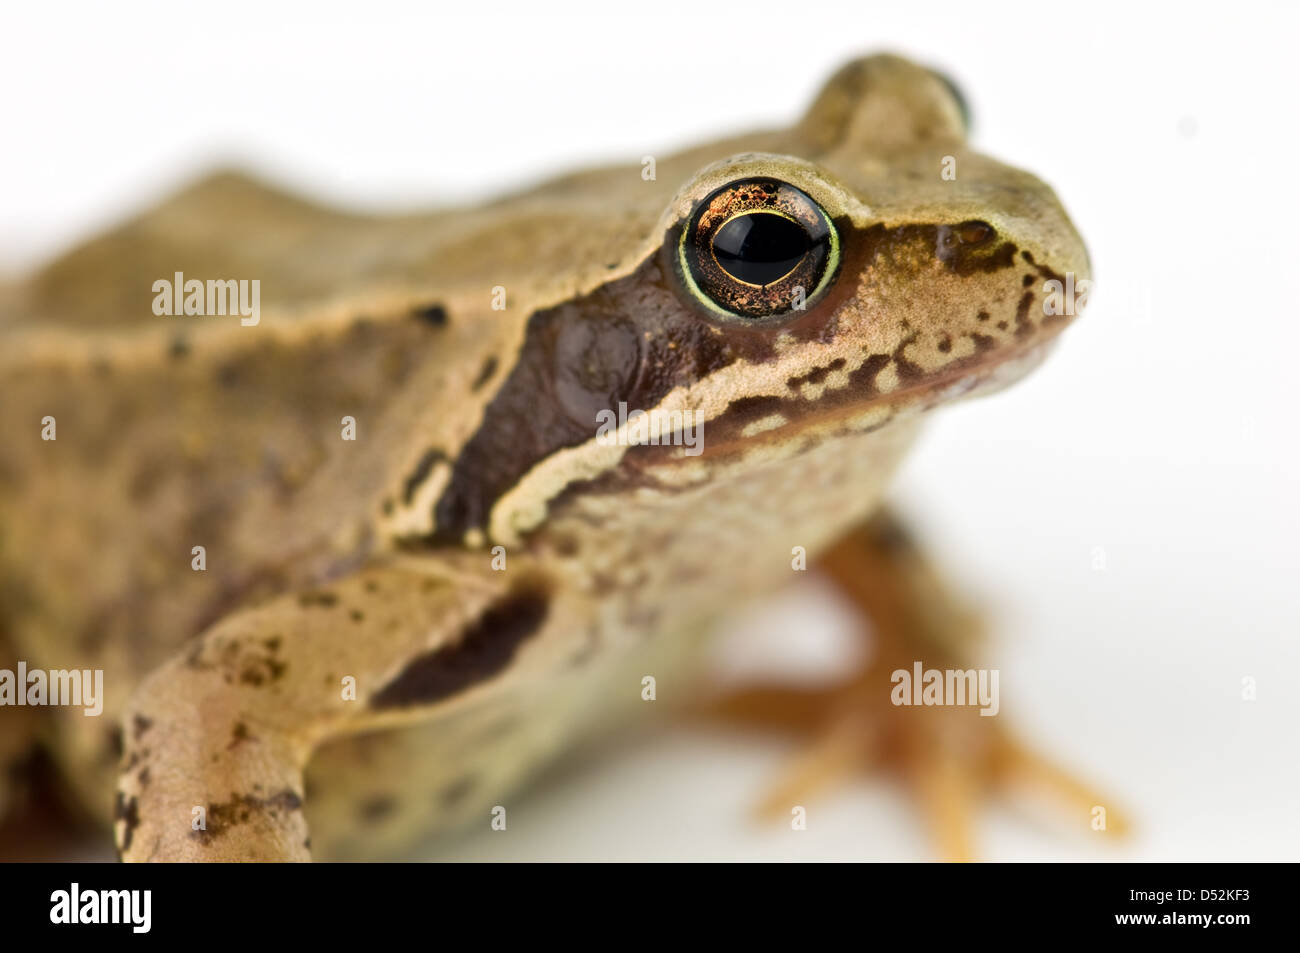 frog isolated on white background Stock Photo